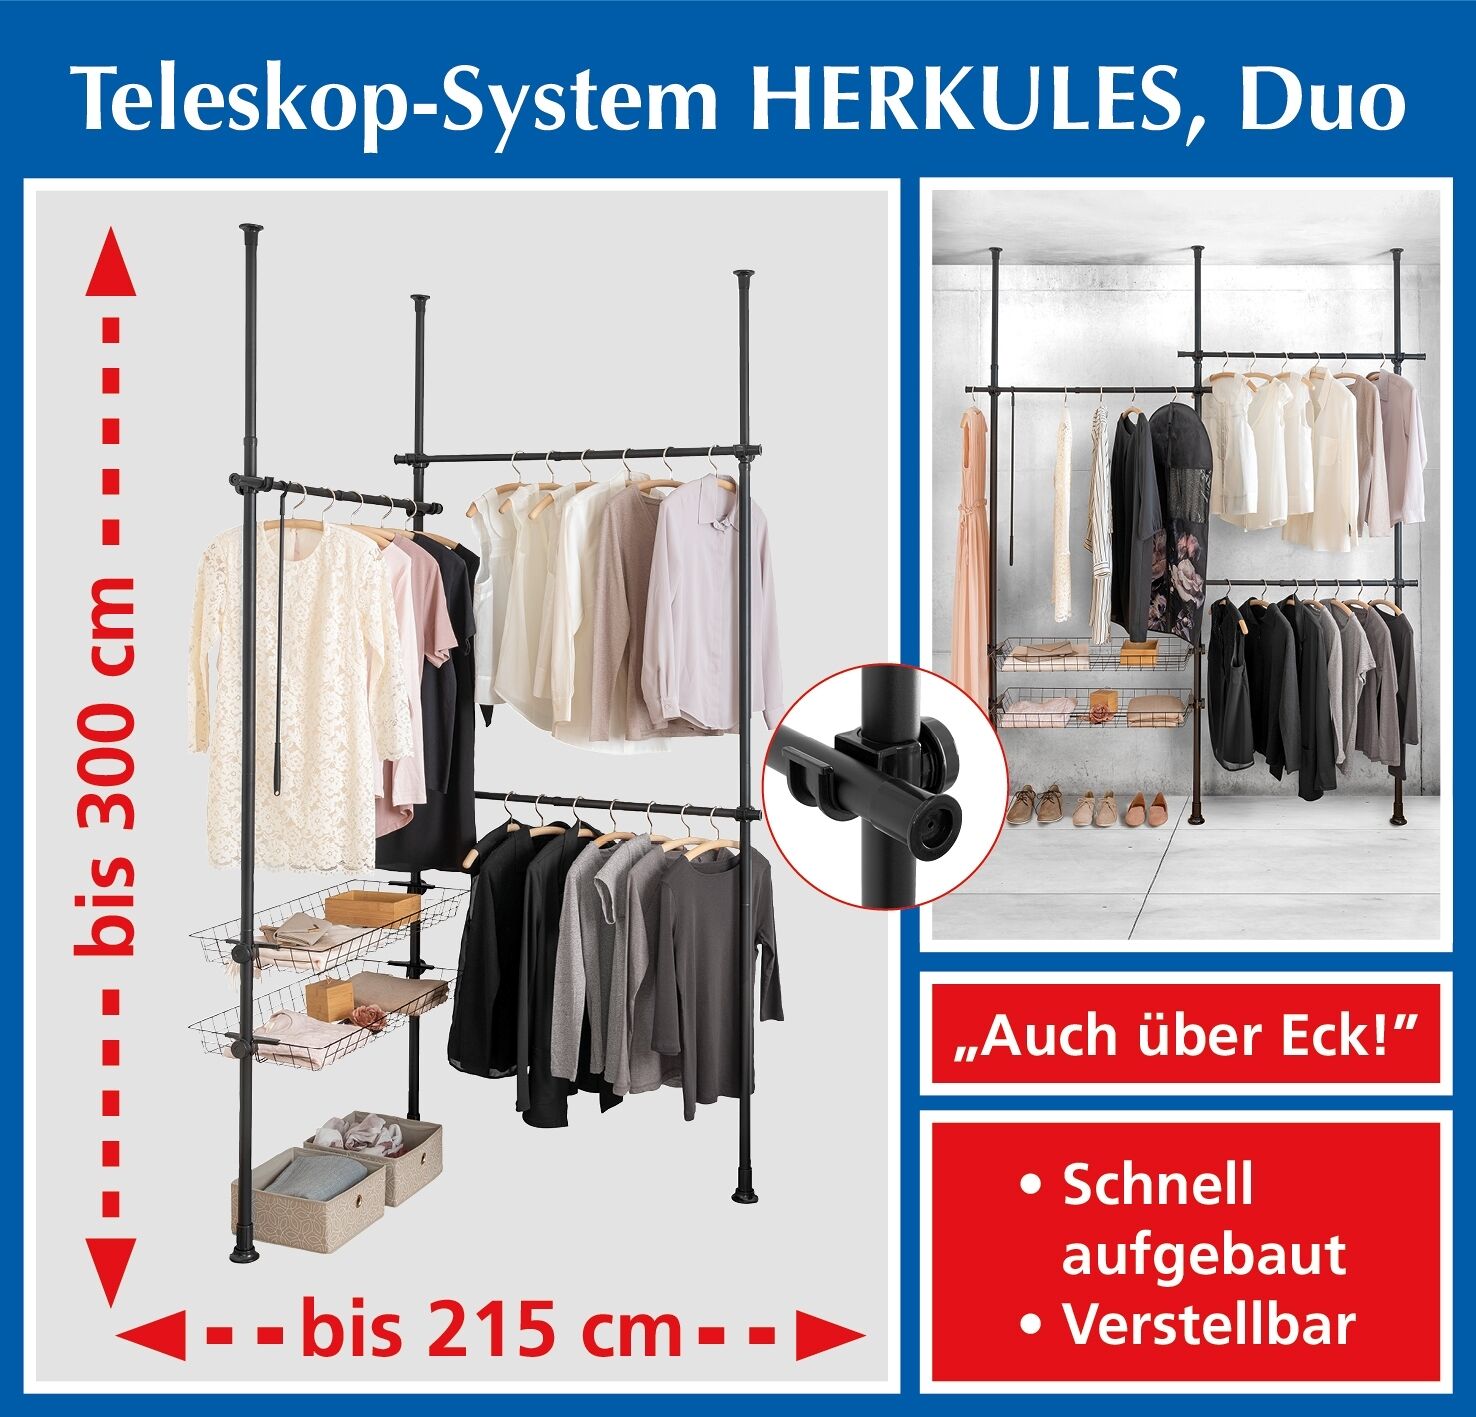 Teleskop-System Herkules Duo Schwarz, verstellbares Garderoben-System